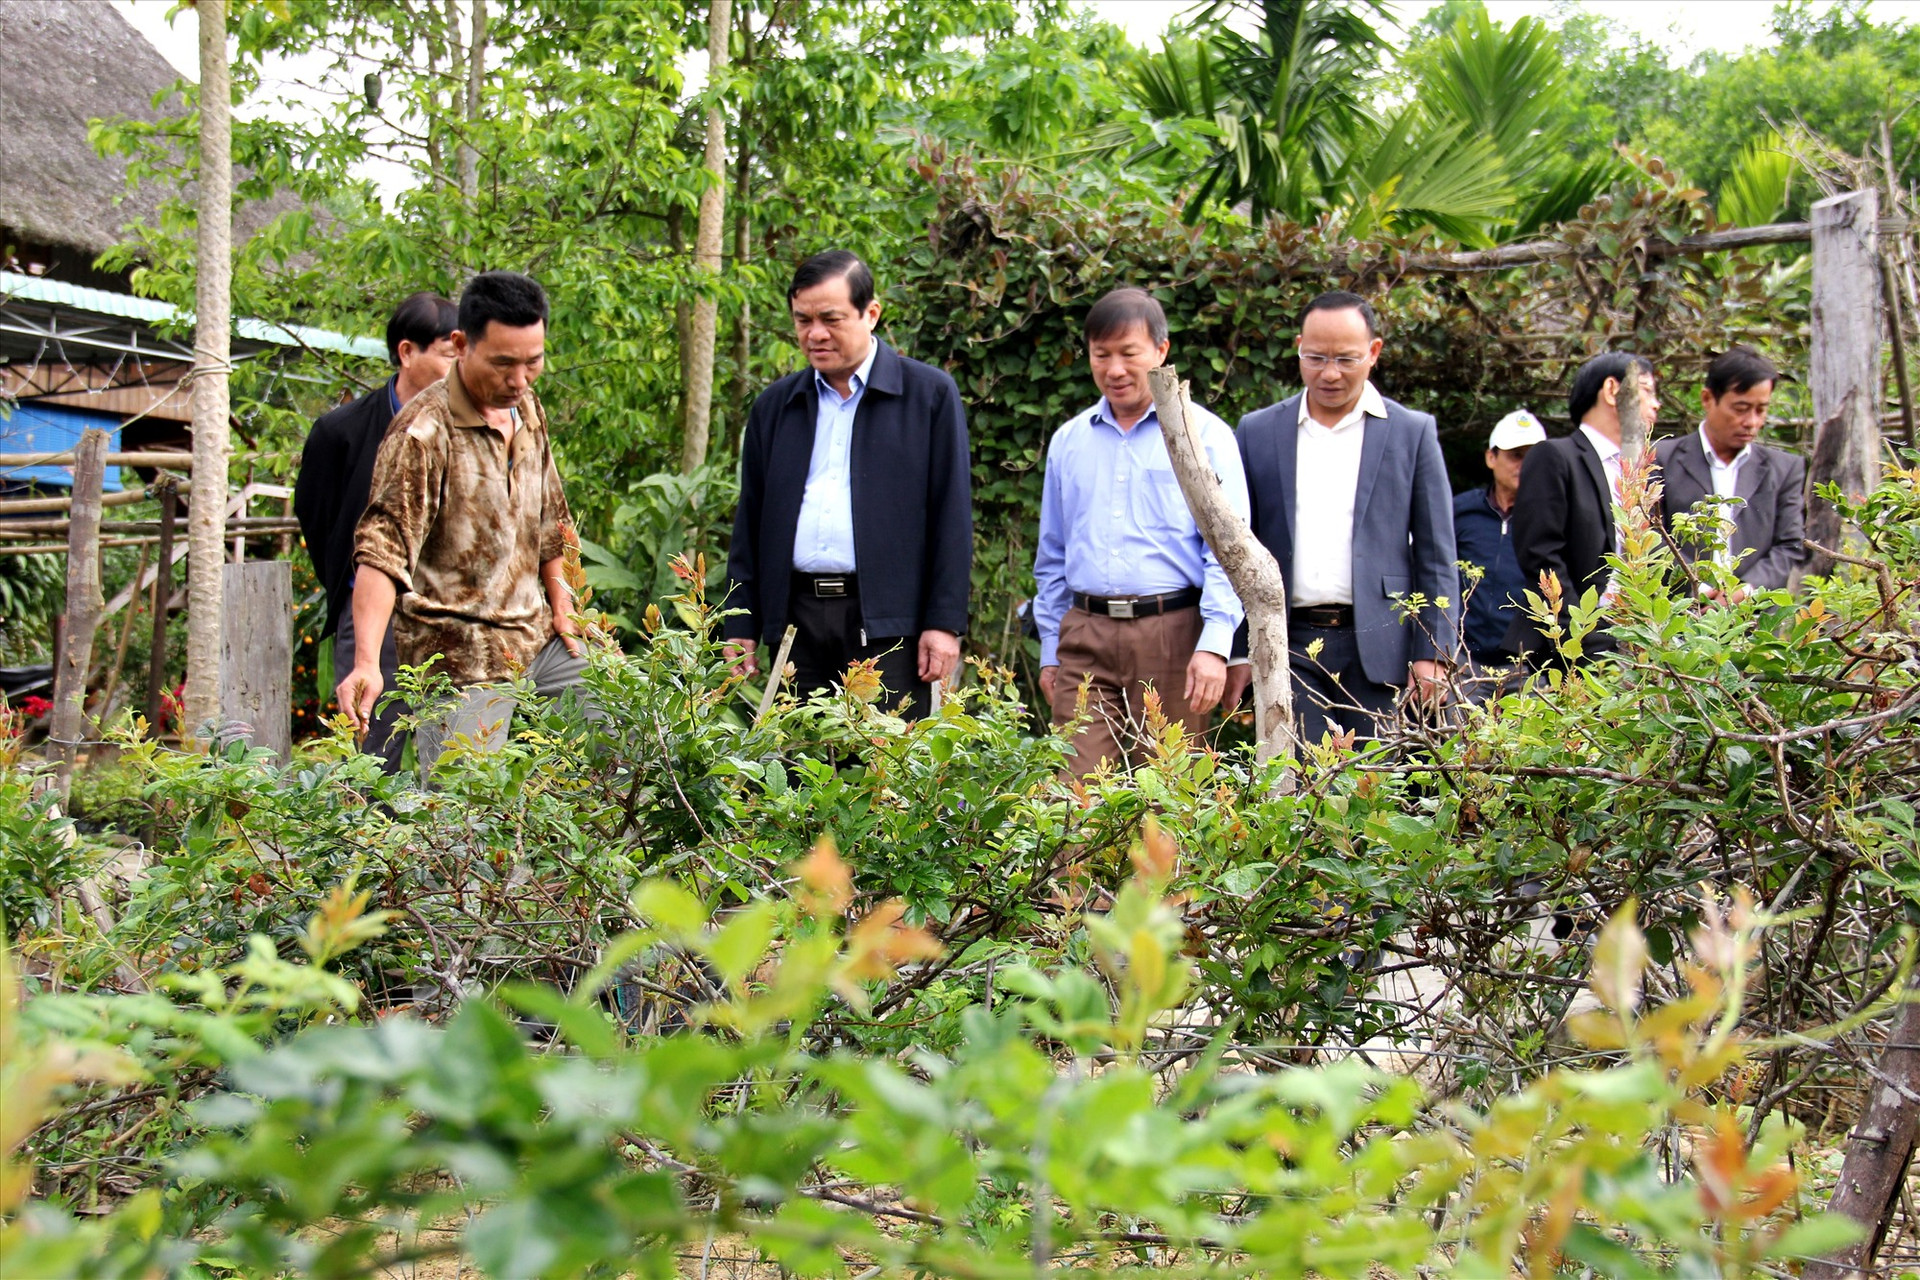 Bí thư Tỉnh ủy Phan Việt Cường cùng đoàn công tác đến thăm mô hình trồng chè dây razéh tại thôn Pa Nan (xã Tư). Ảnh: A.N